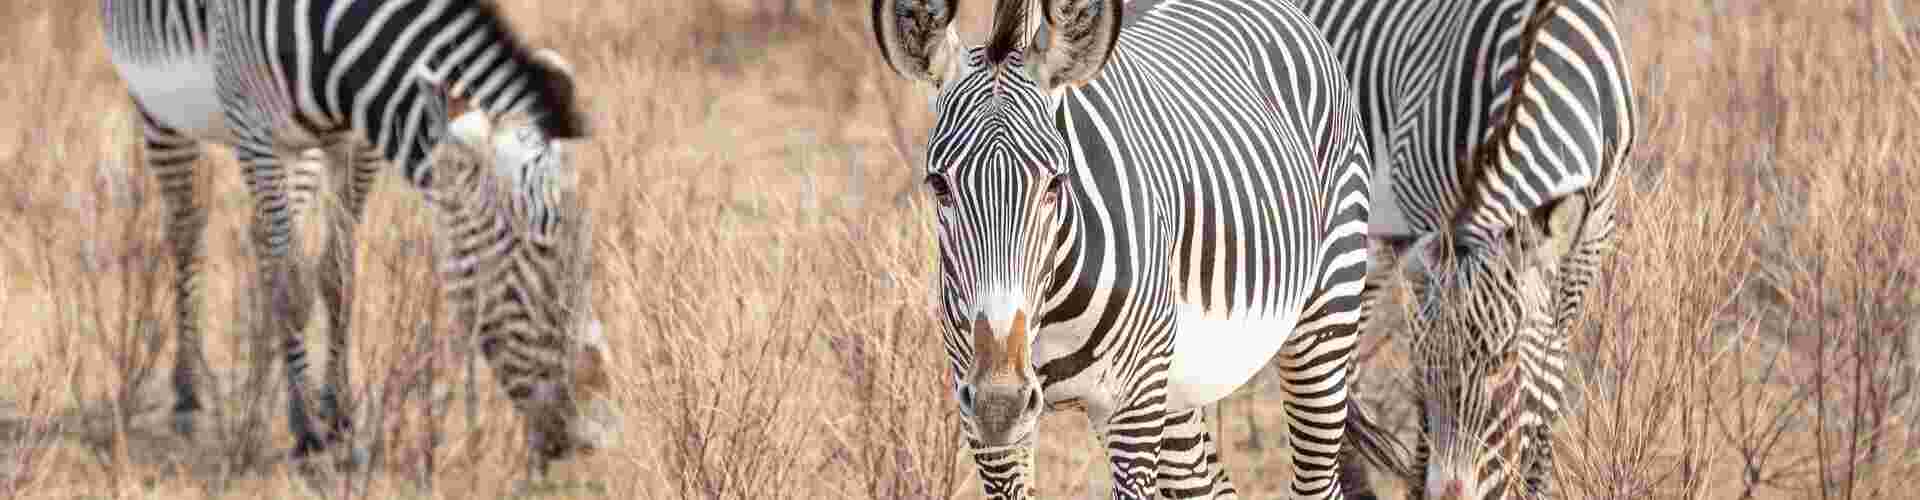 Zebras eating grass in Samburu National Park